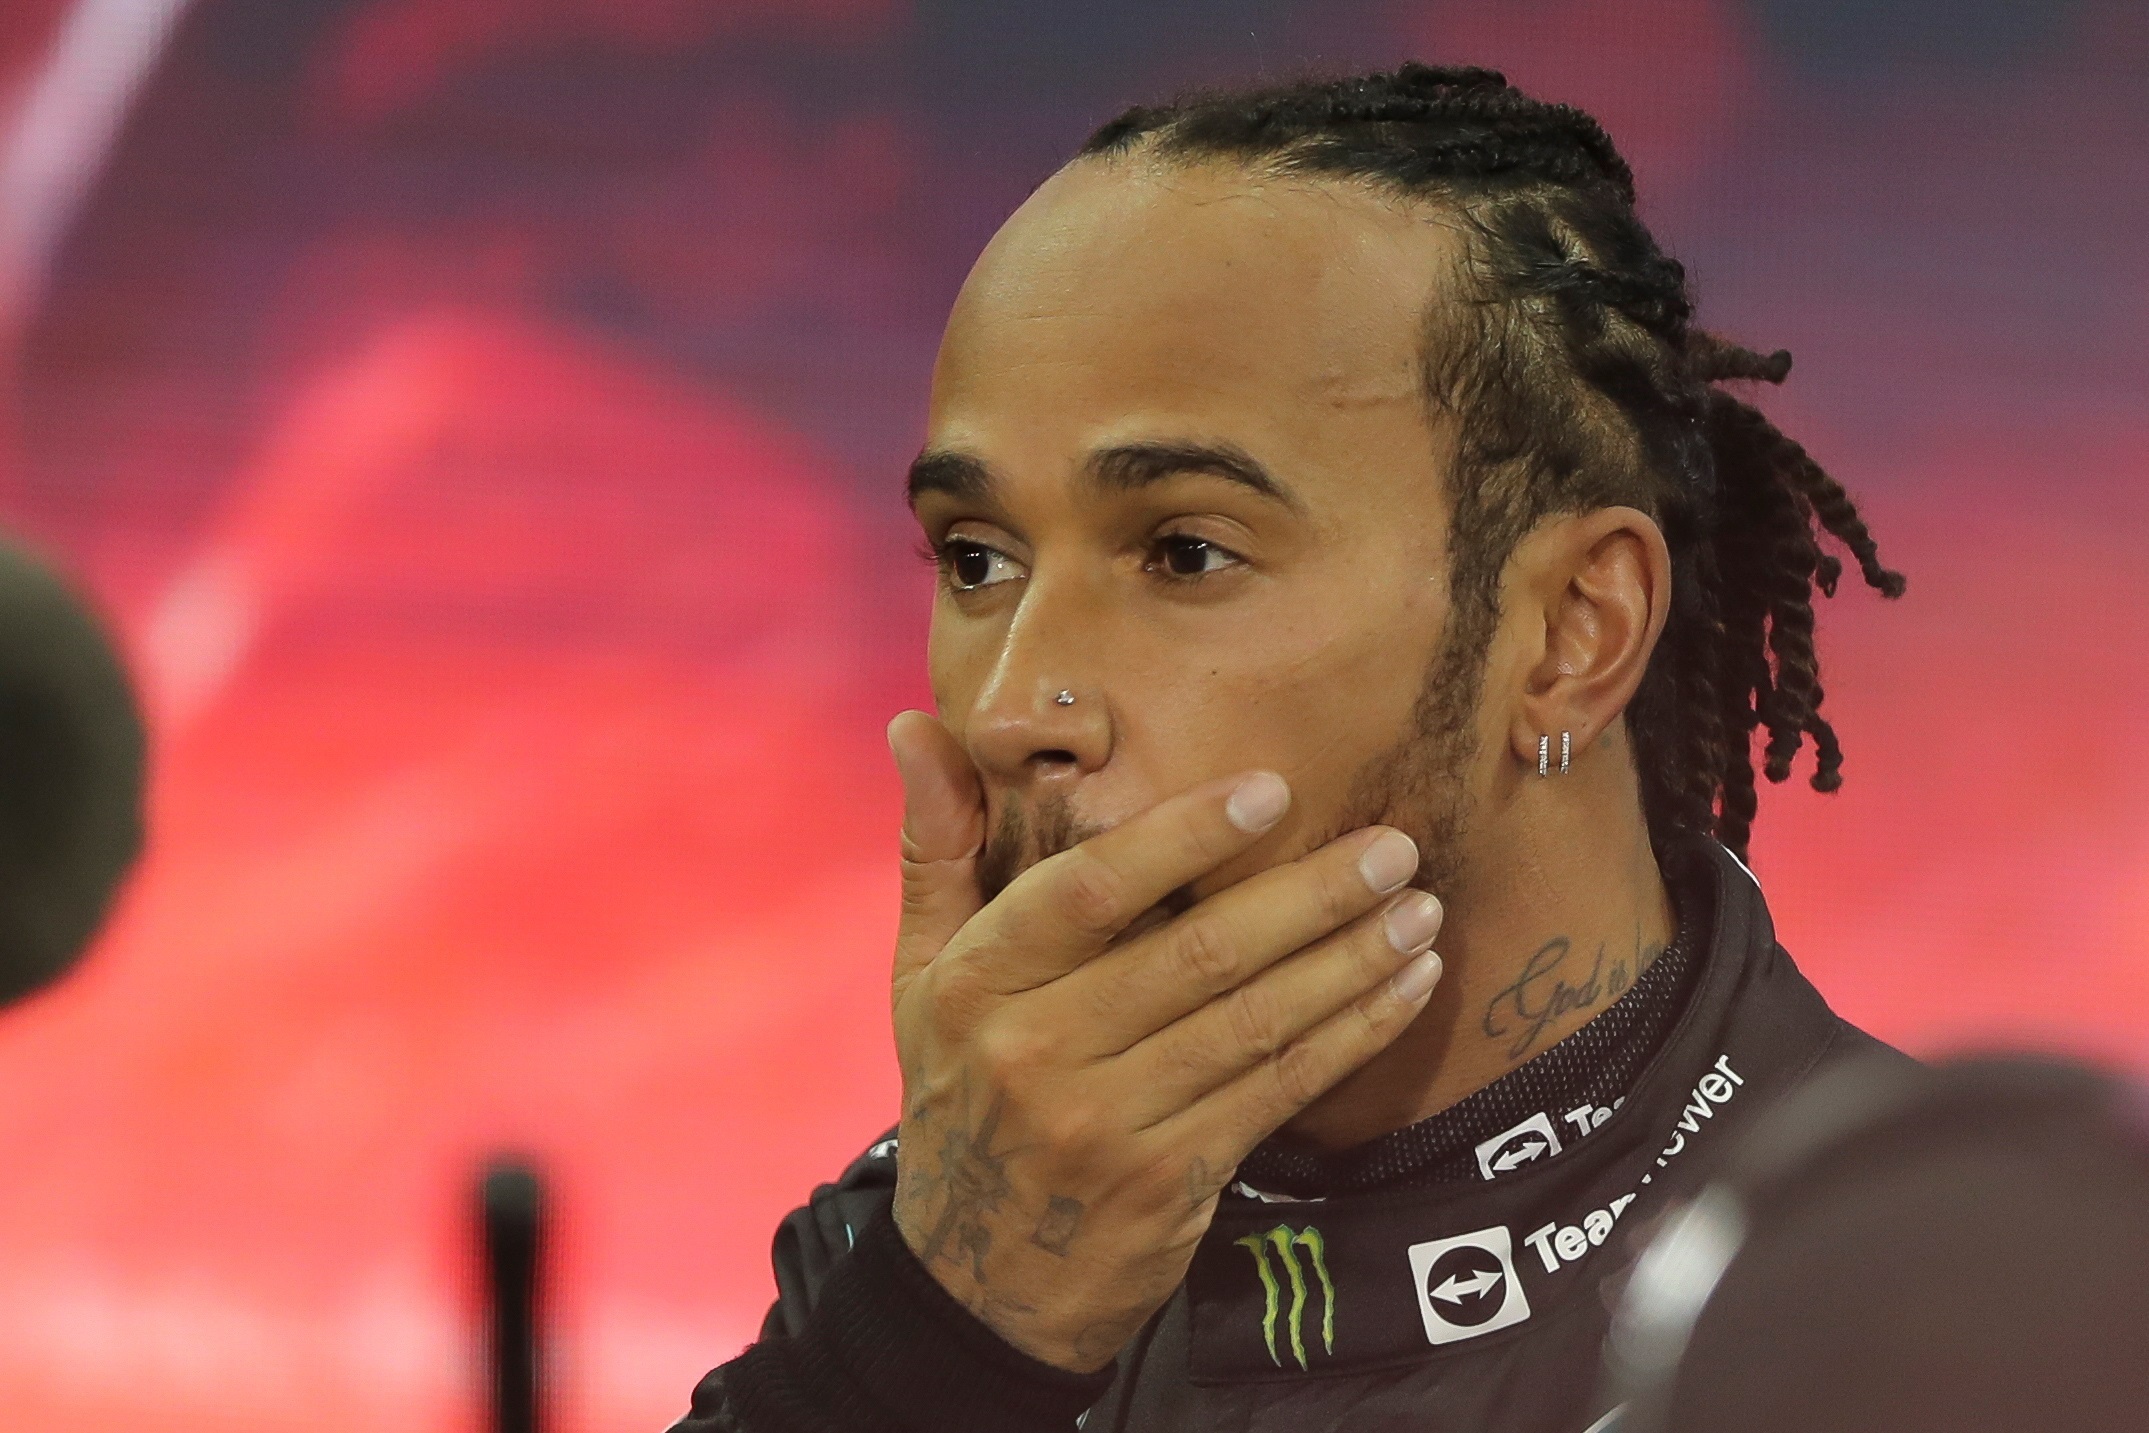 “Esto está siendo manipulado”: El audio de Hamilton antes de perder con Verstappen el título (Video)